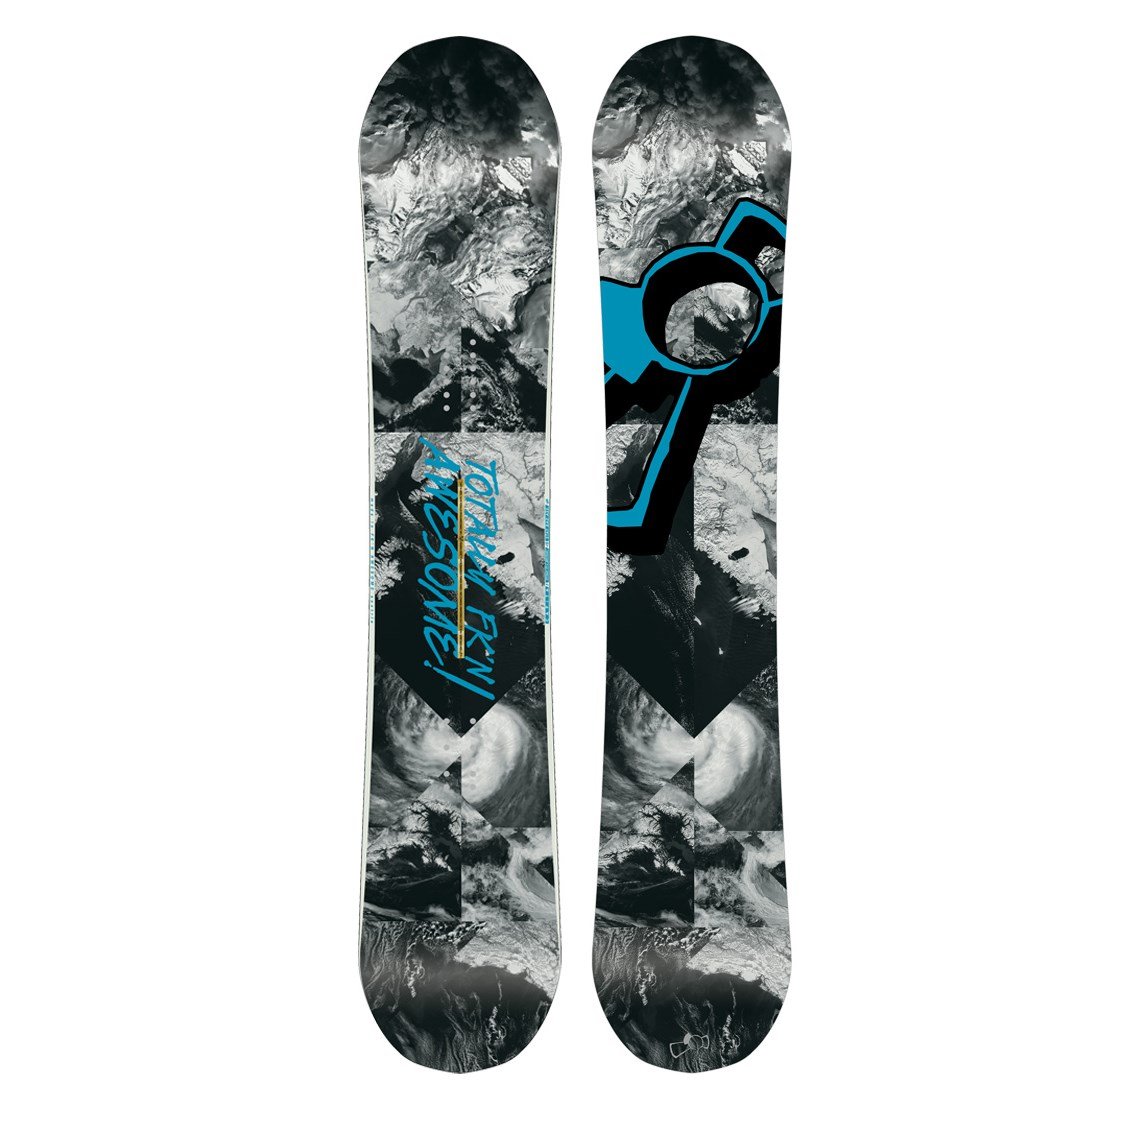 CAPiTA Totally FK'n Awesome Snowboard 2015 | evo